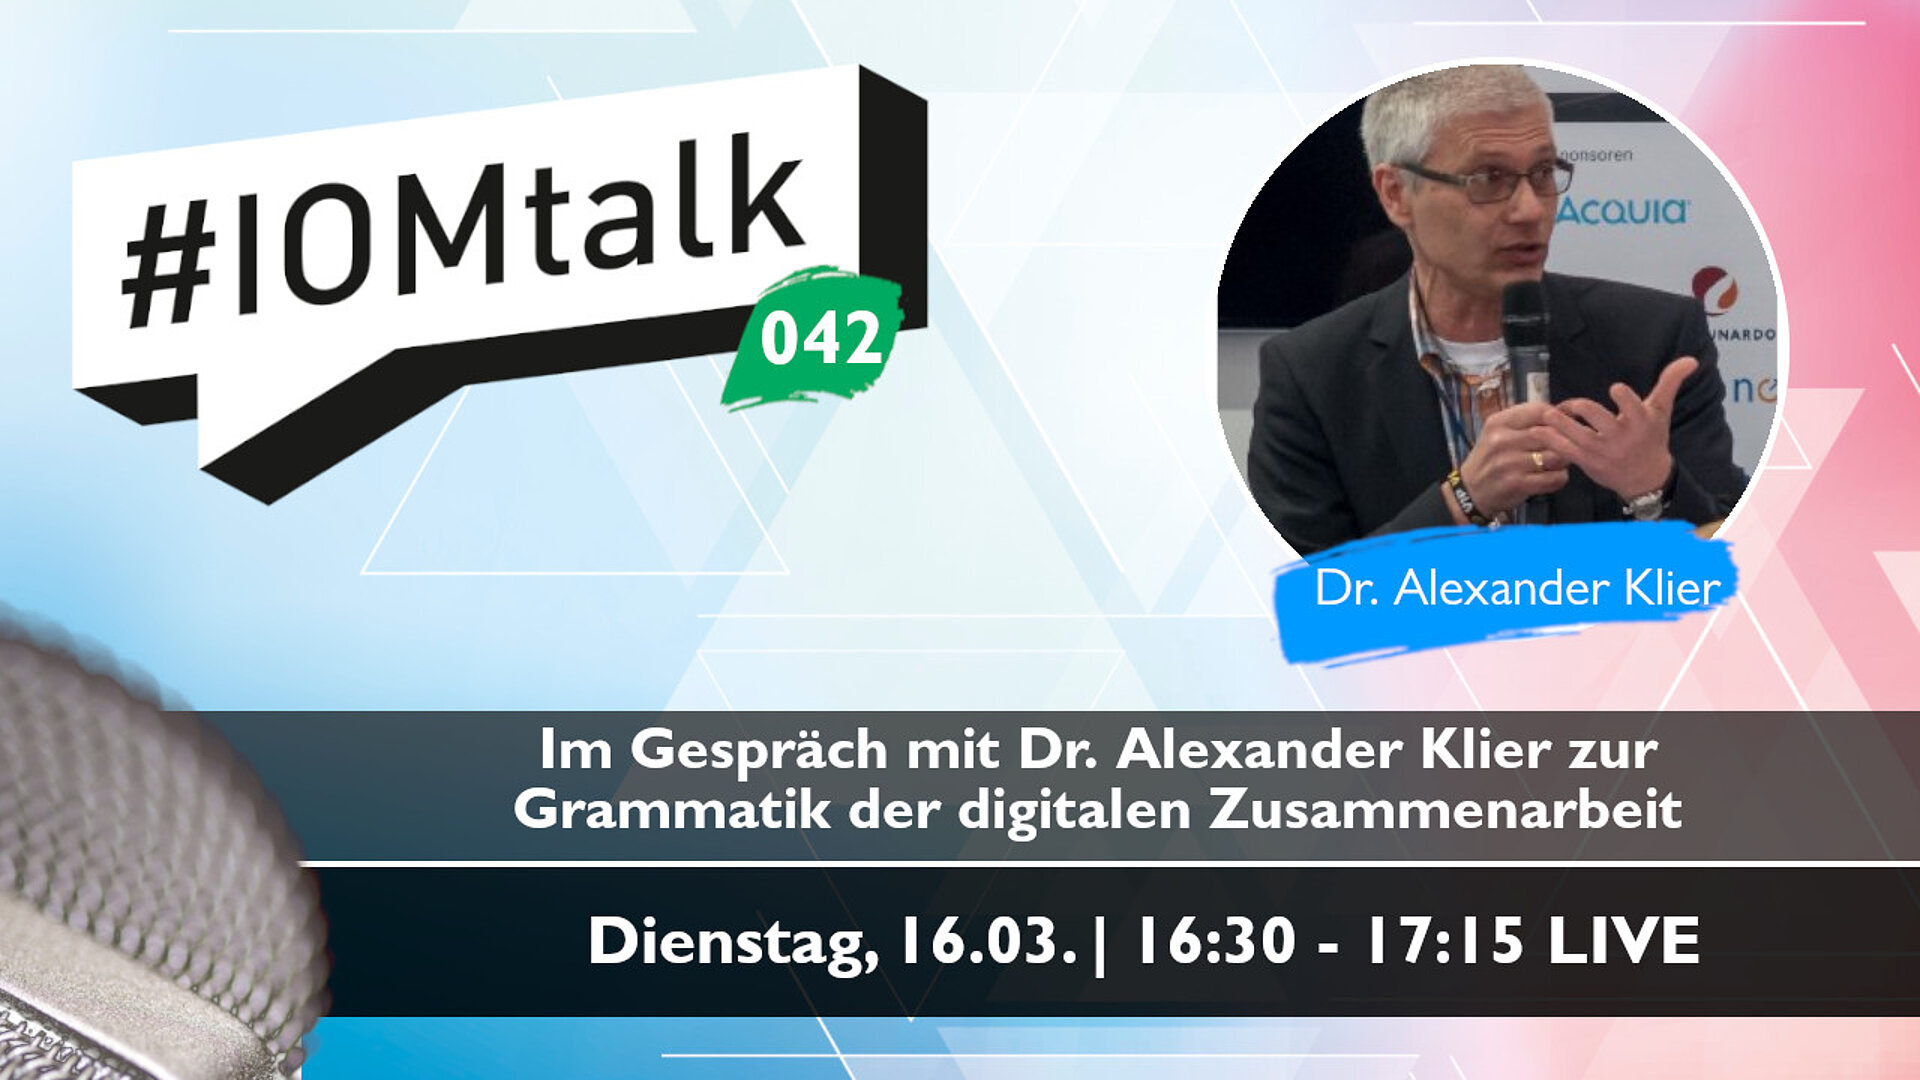 Im Gespräch mit Dr. Alexander Klier und warum es ein Grammatikverständnis für die digitale Zusammenarbeit braucht